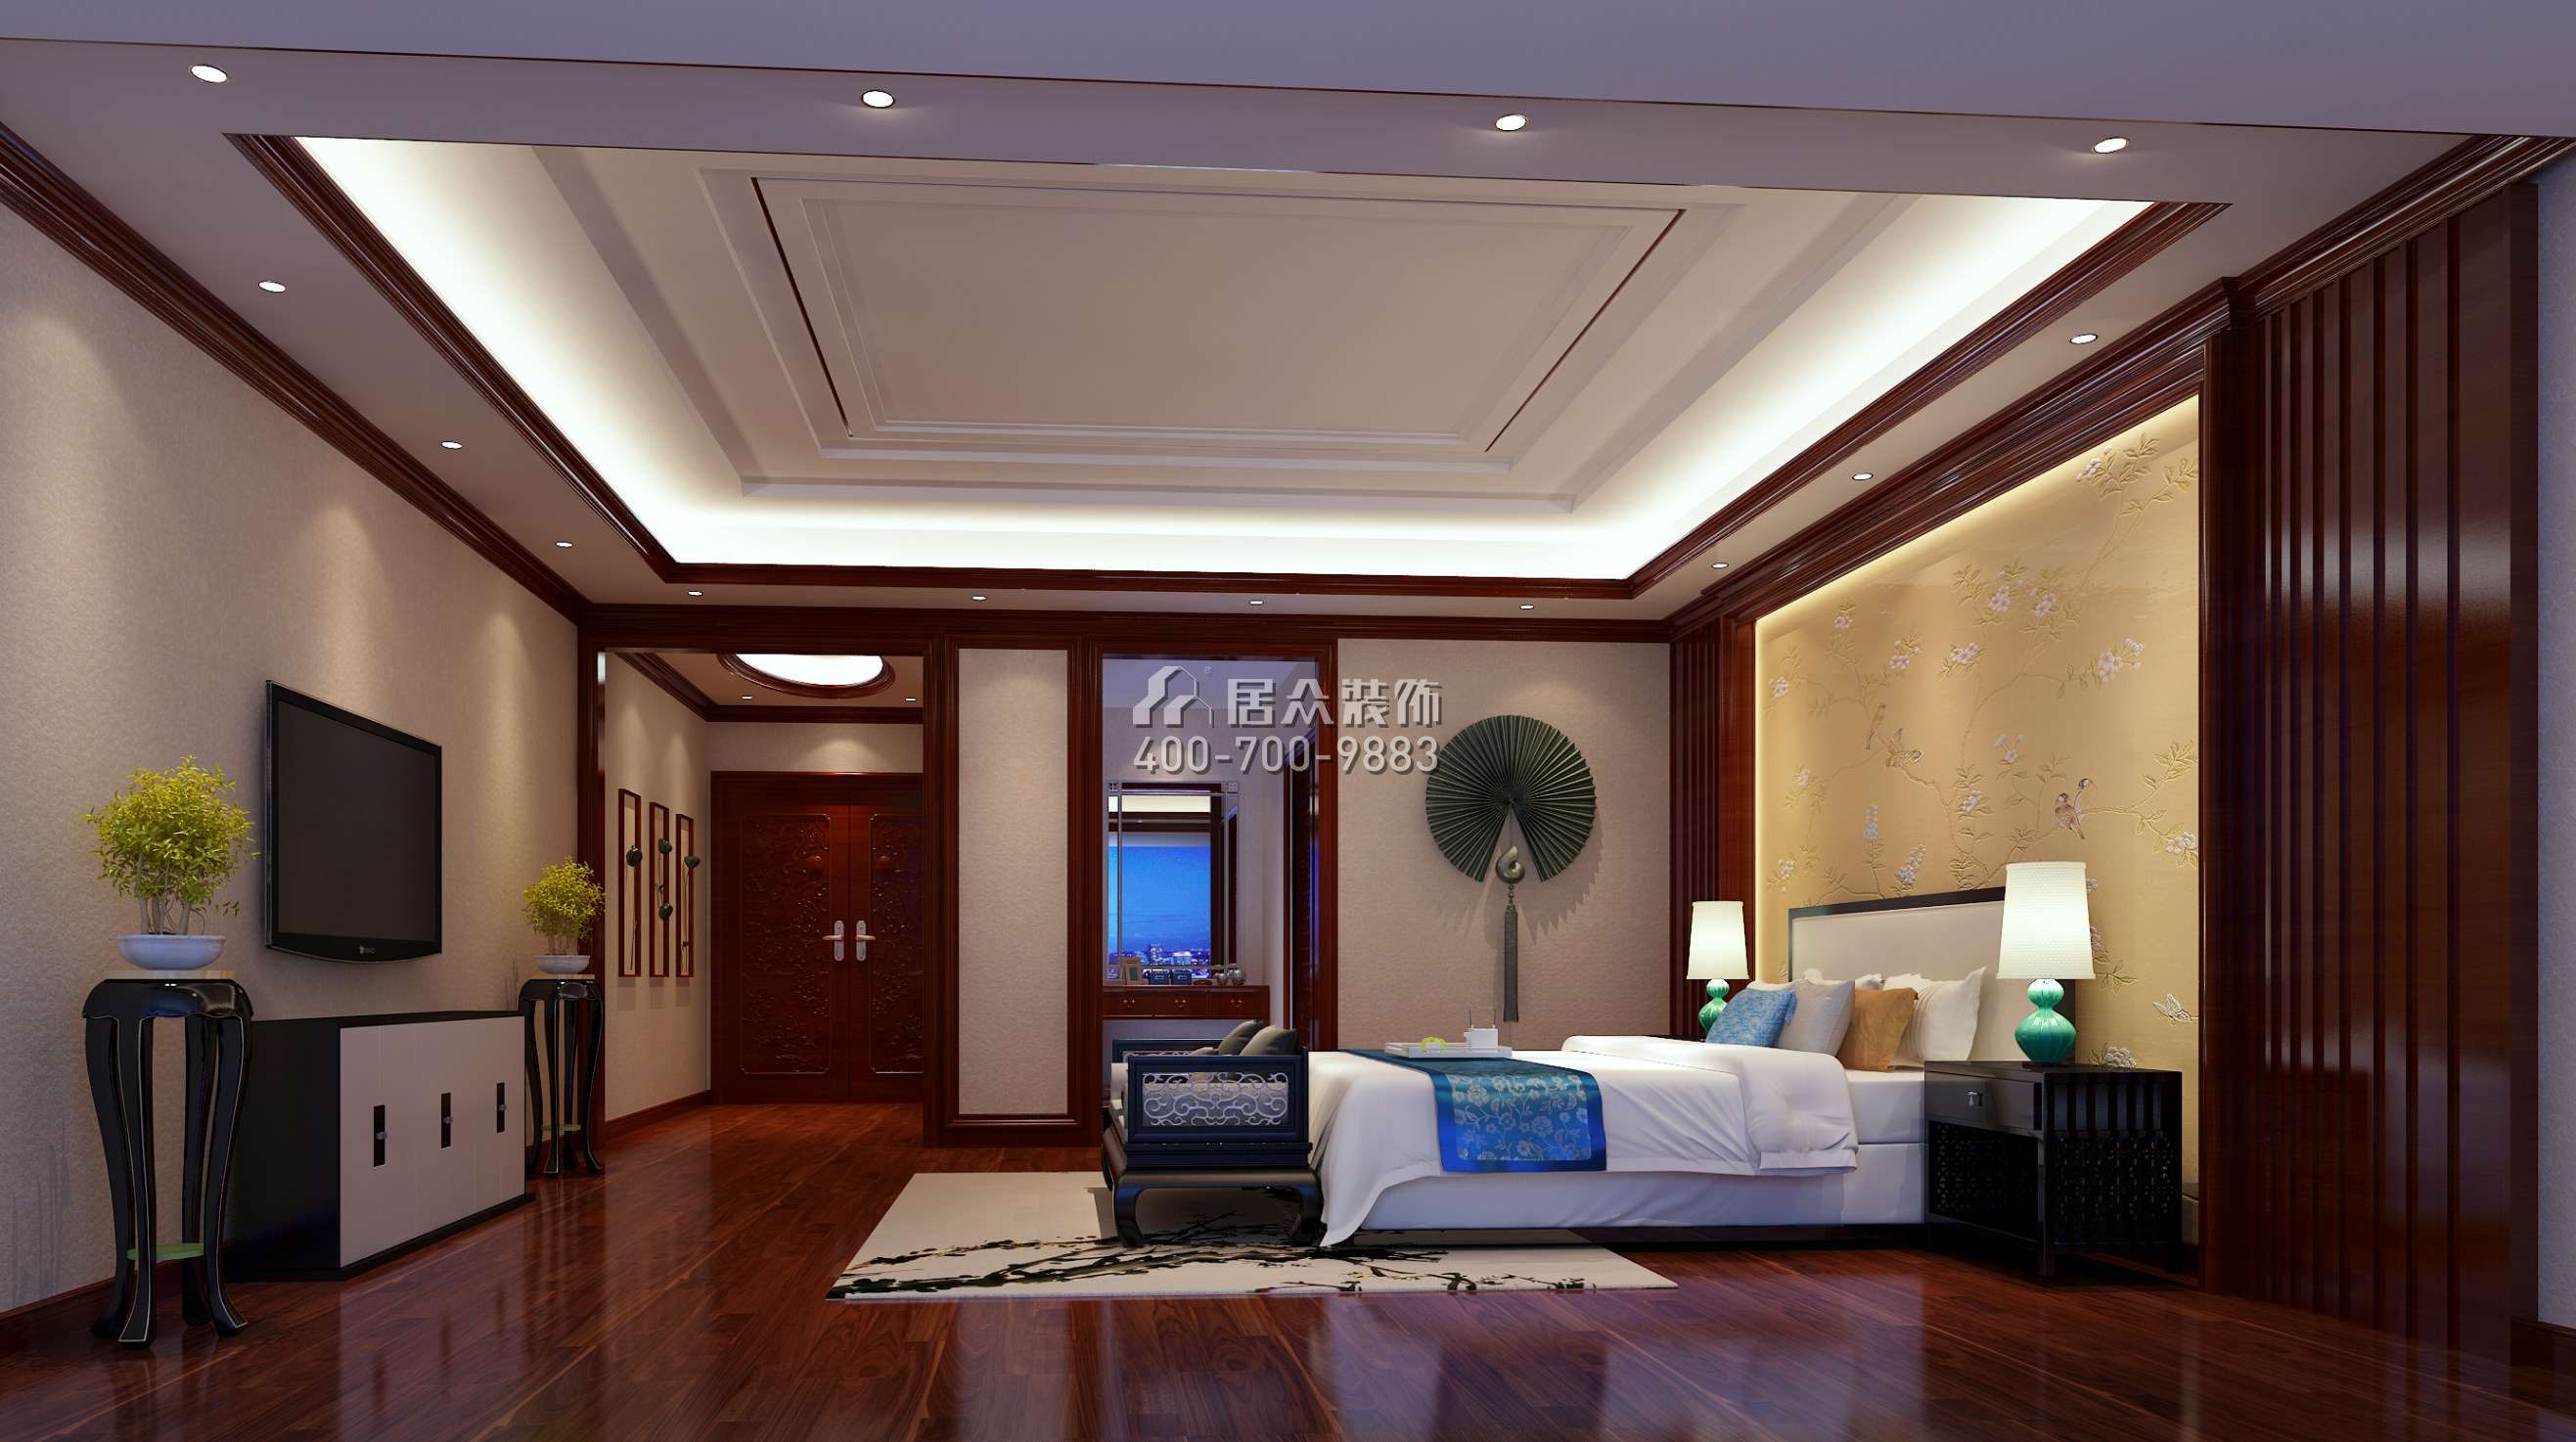 楠木花园350平方米中式风格别墅户型卧室装修效果图